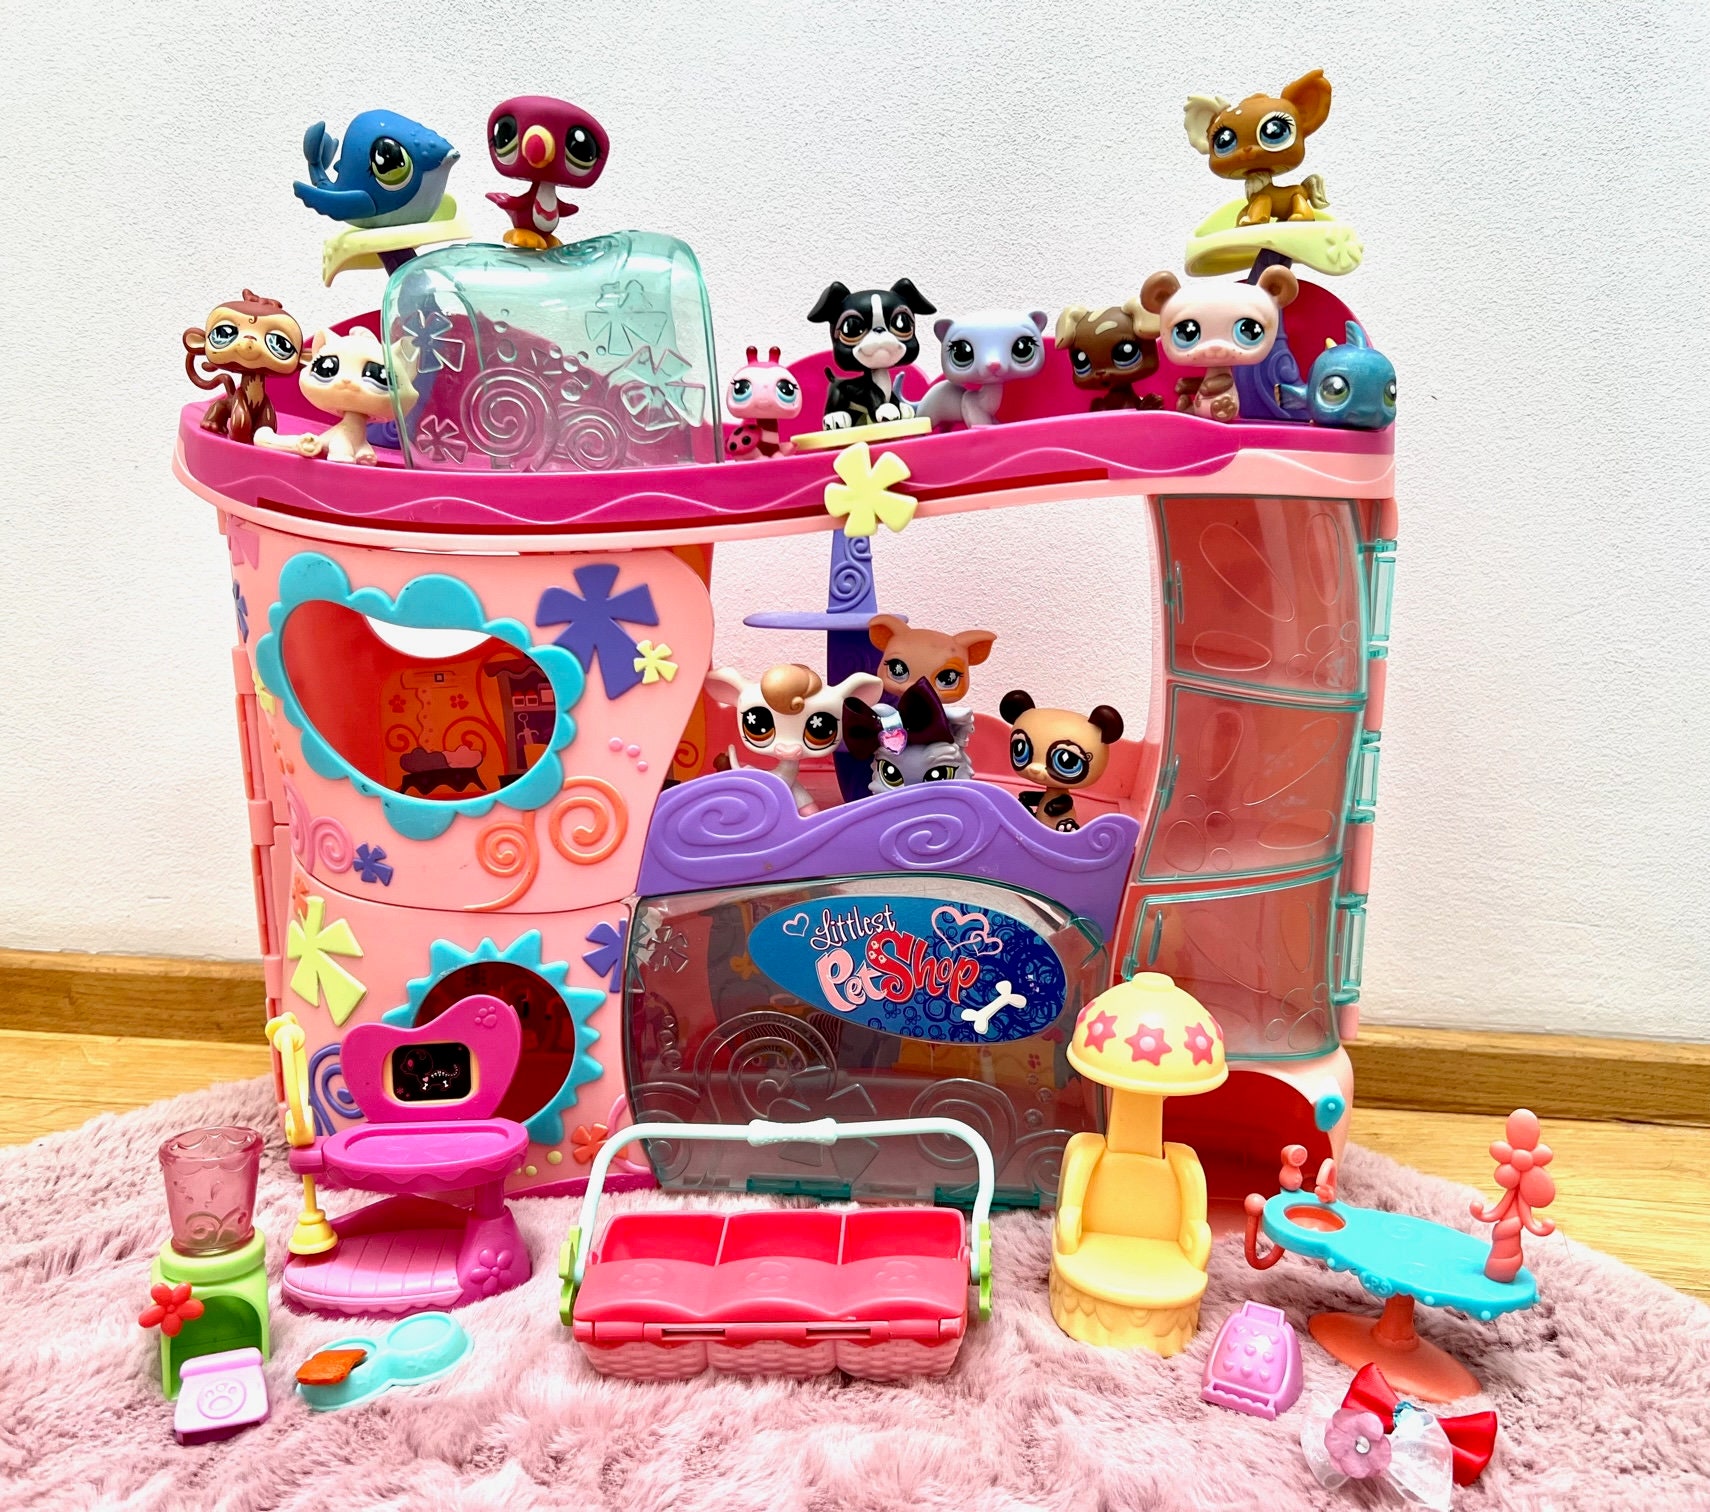 Playset Minnie Pet Shop